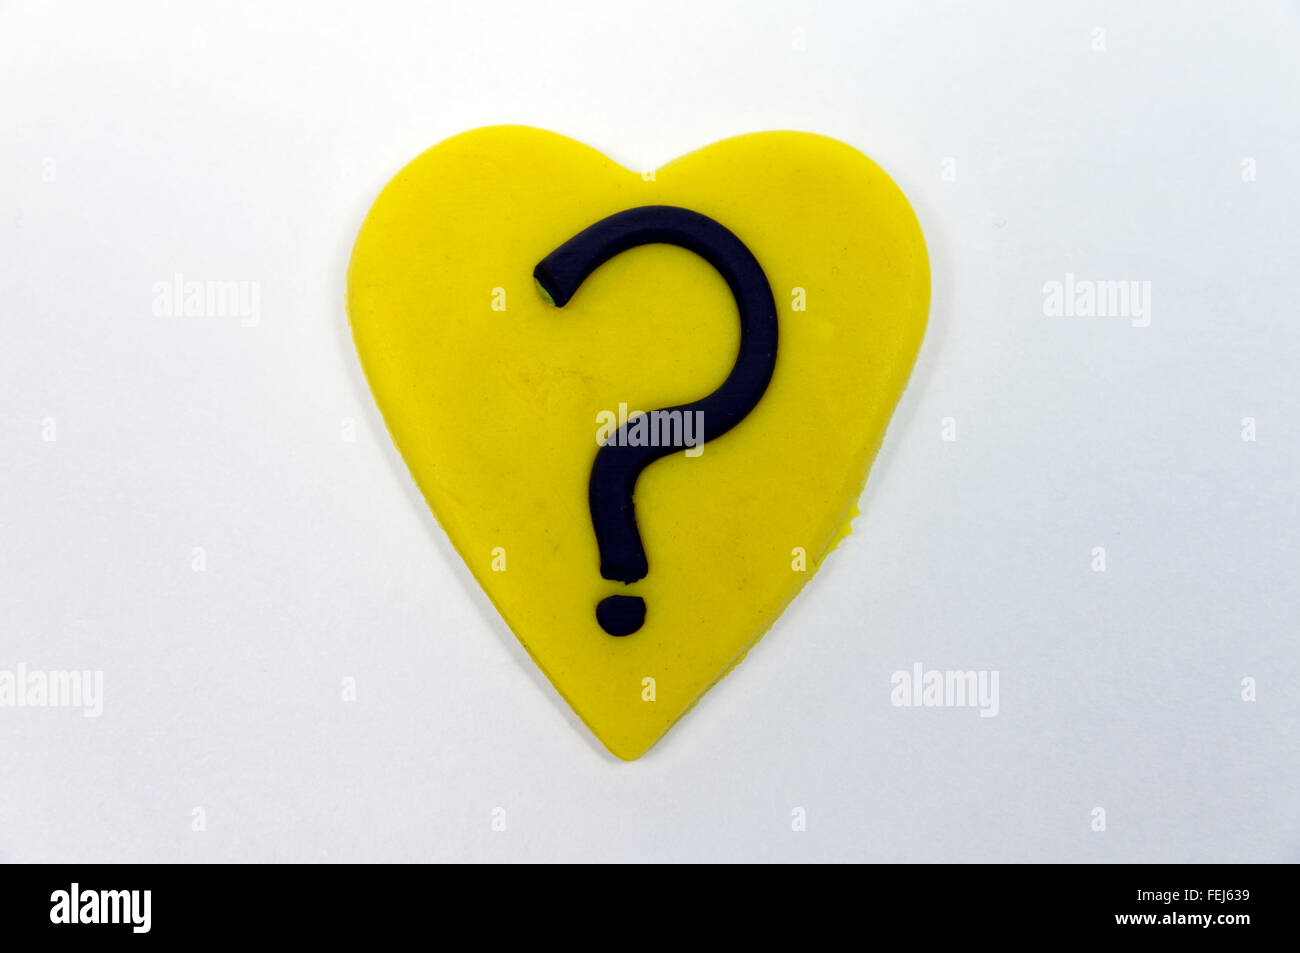 Cuore giallo con punto interrogativo realizzato da Play-doh. Foto Stock